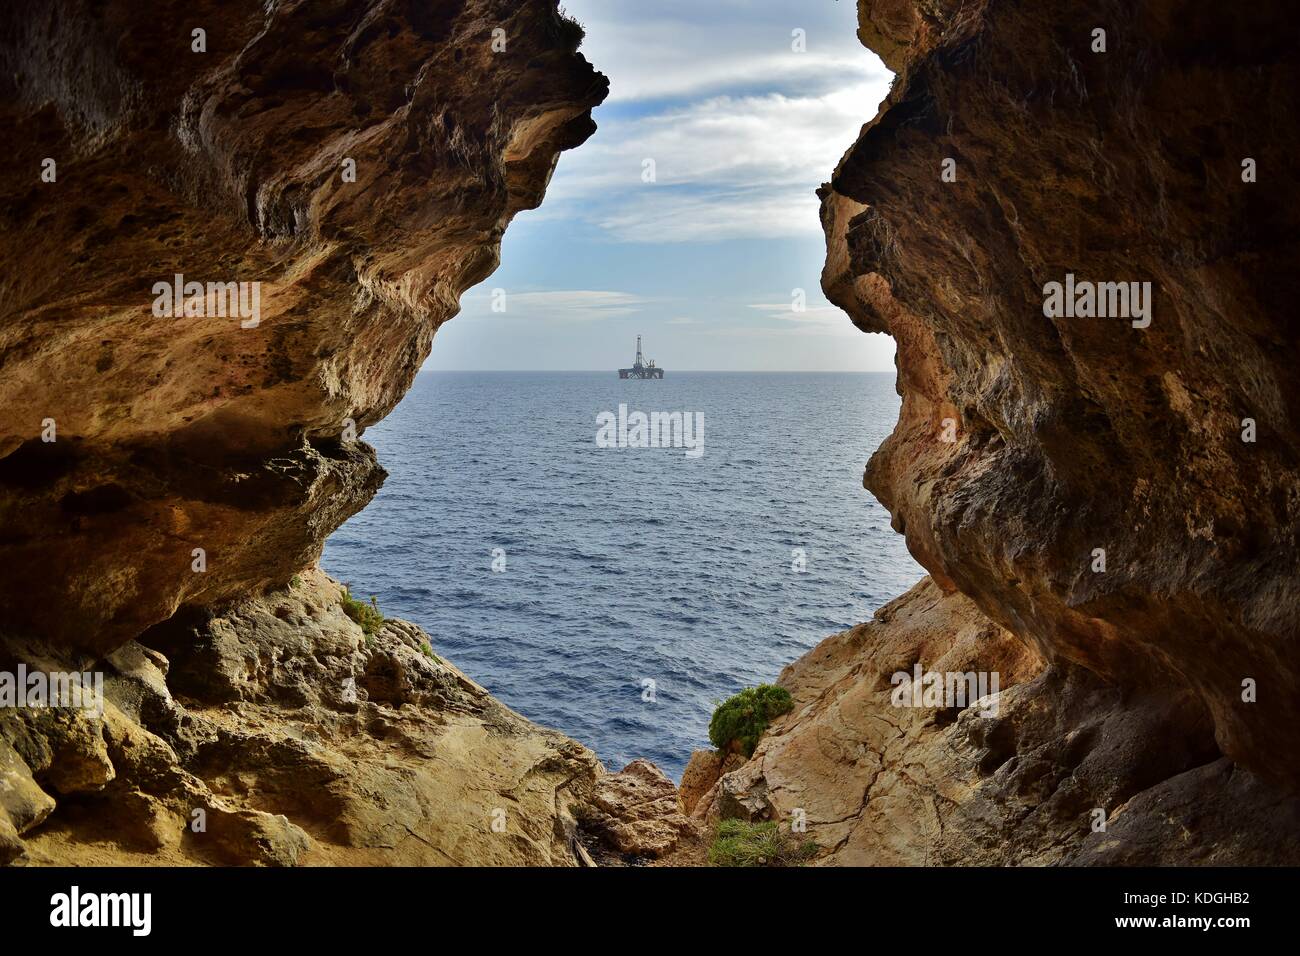 La vue de mer agitée, formé par l'érosion / érosion du calcaire maltais. La sortie de la grotte se trouve face à la mer, avec une plate-forme pétrolière dans la distance Banque D'Images